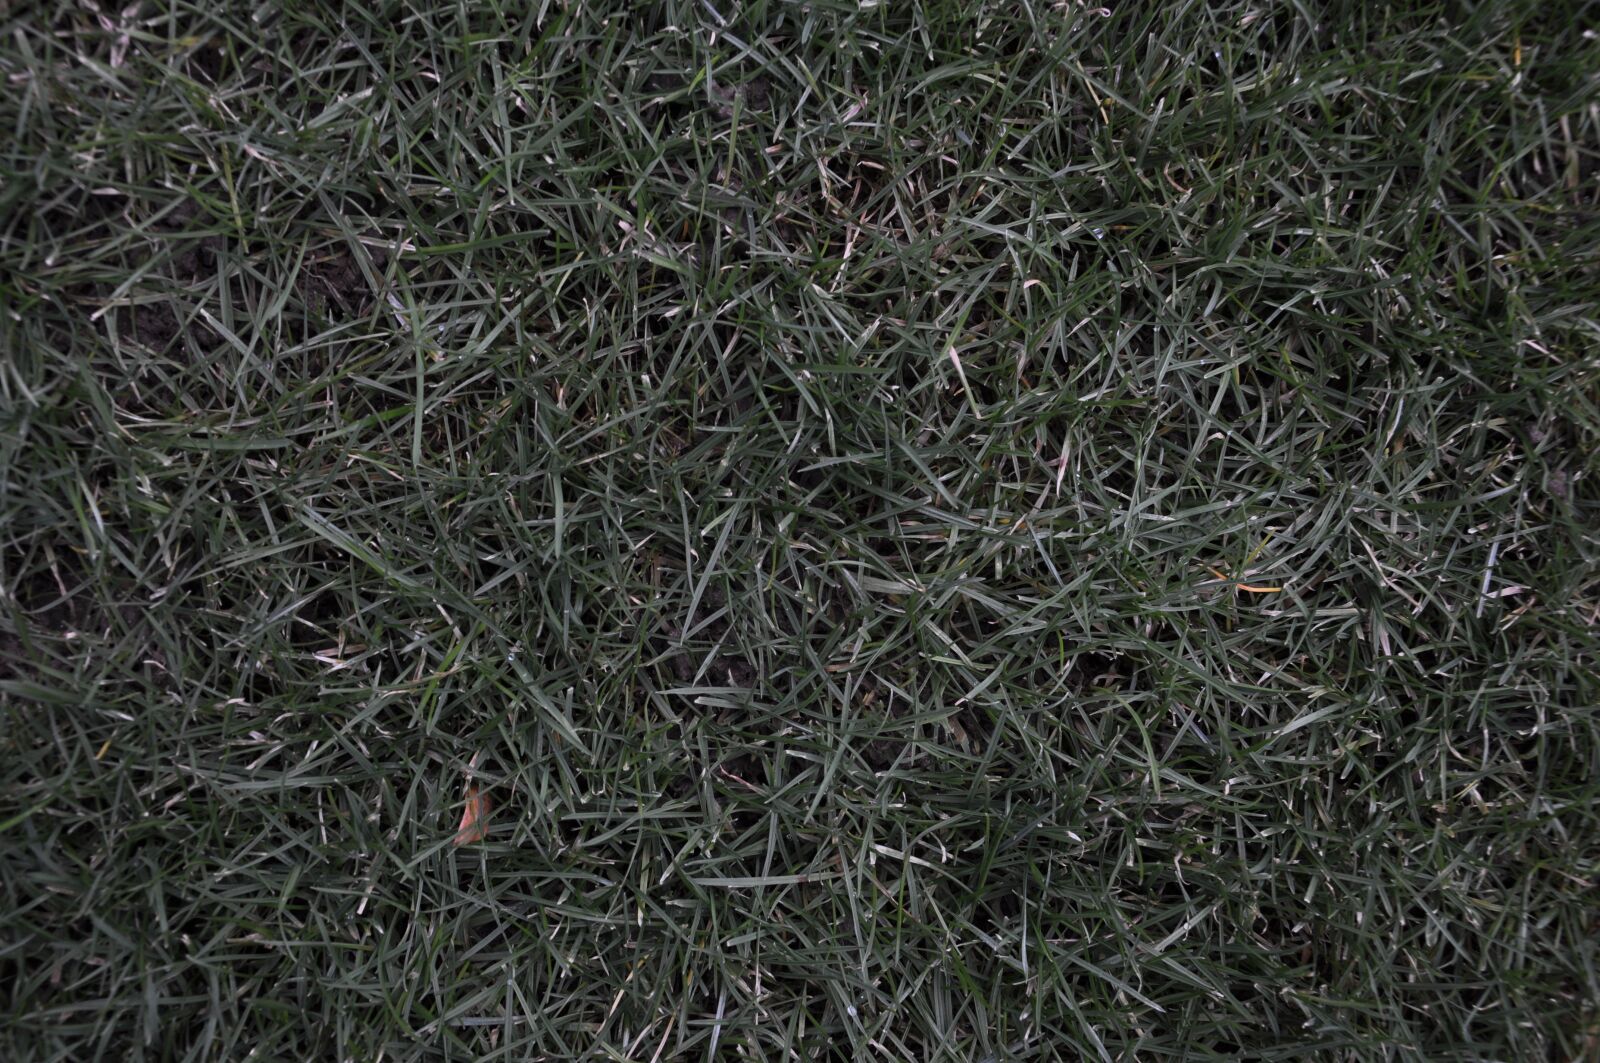 Nikon D90 sample photo. Grass, nature, rush photography